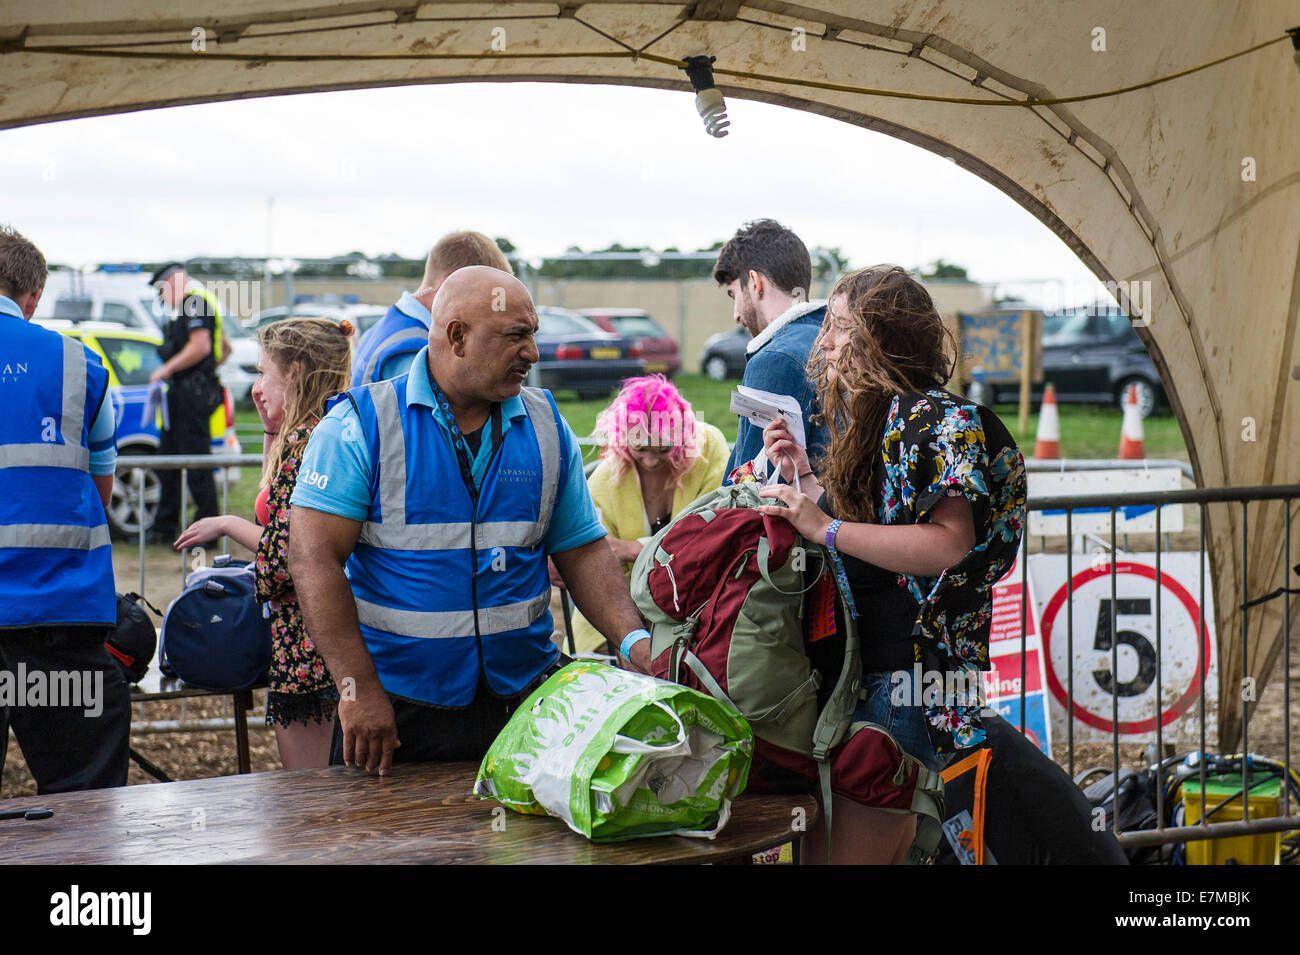 Comprobación de seguridad bolsas en el Festival Brownstock en Essex. Foto de stock